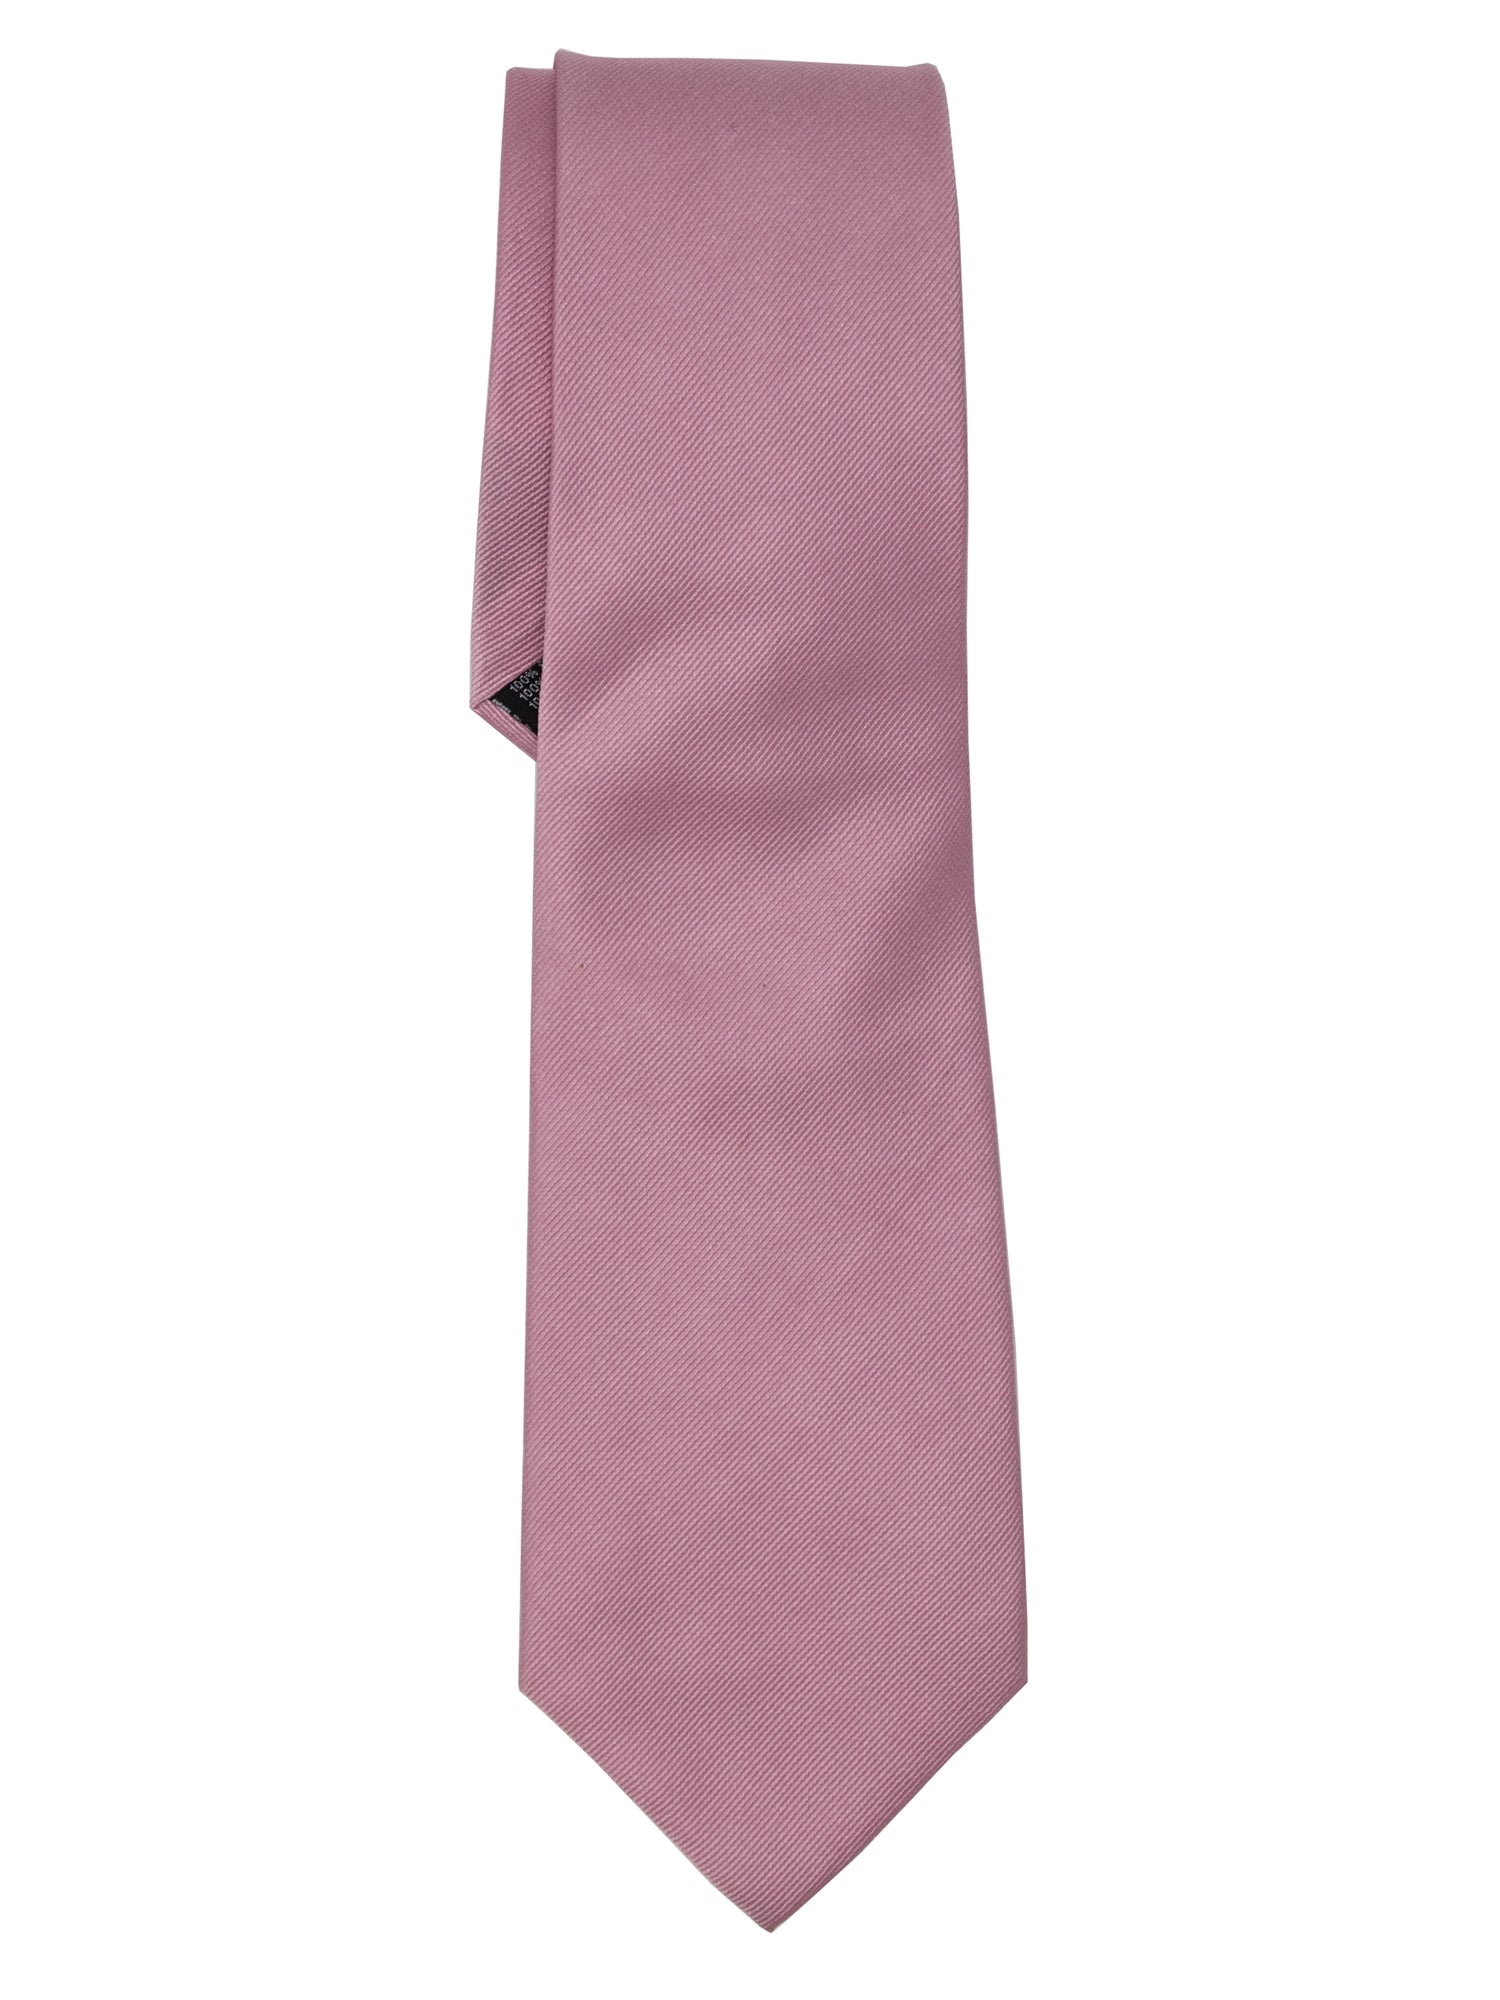 Men's Silk Woven Wedding Neck Tie Collection Neck Tie TheDapperTie Pink Solid Regular 